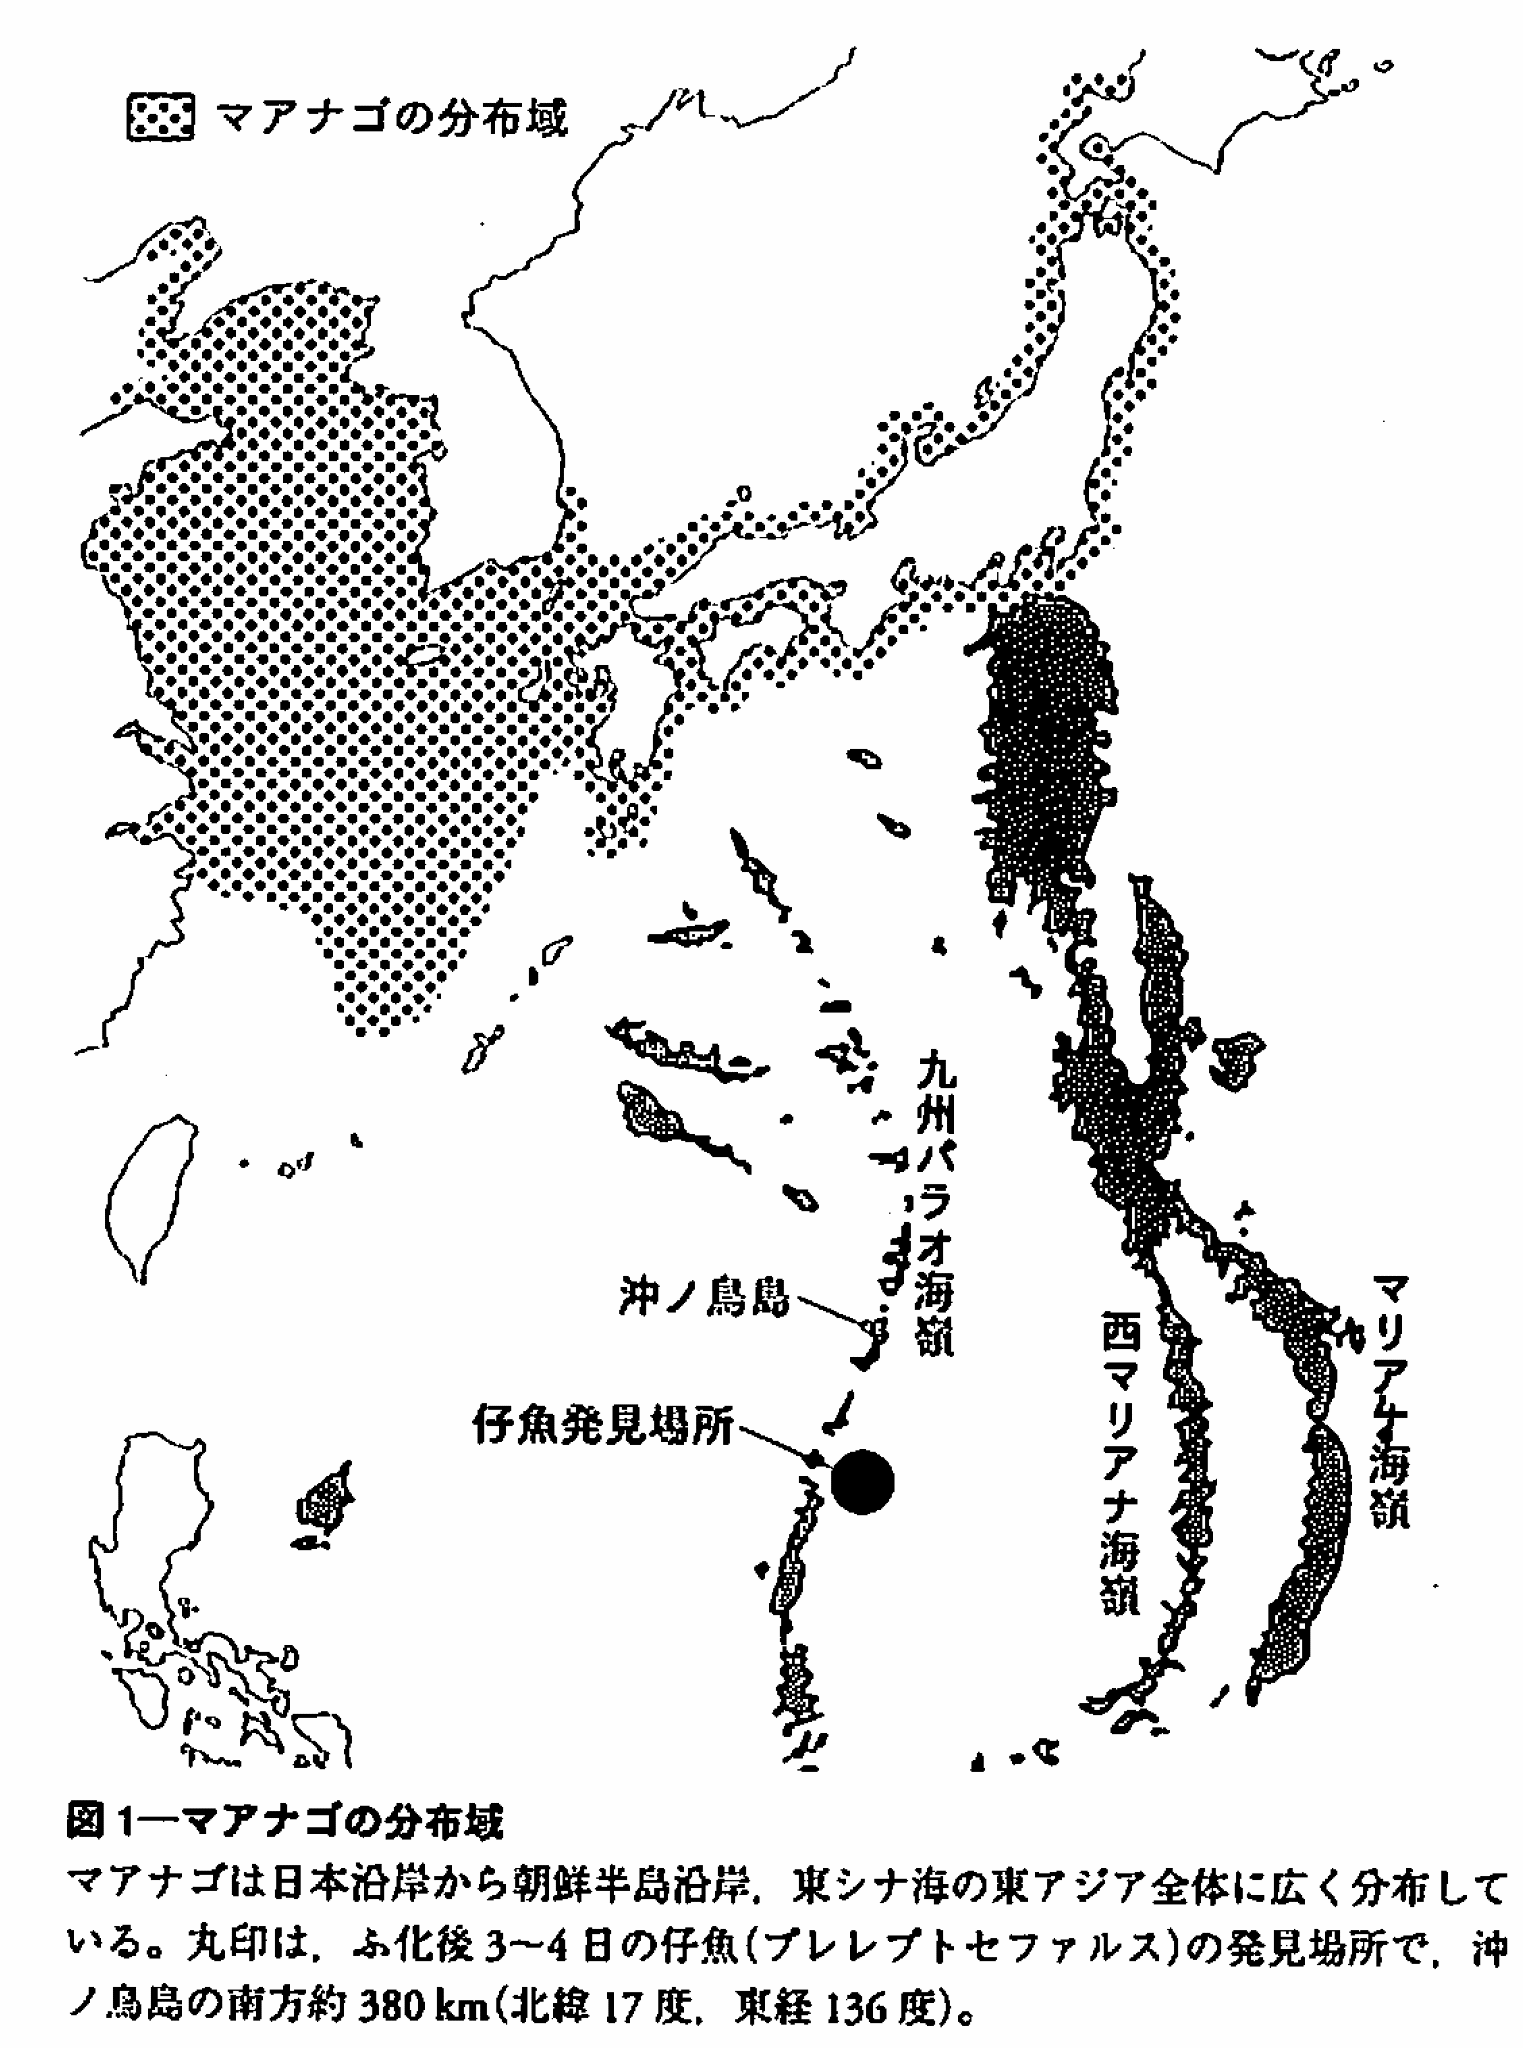 図2. マアナゴの分布域.　黒丸が仔魚の発見場所 2).